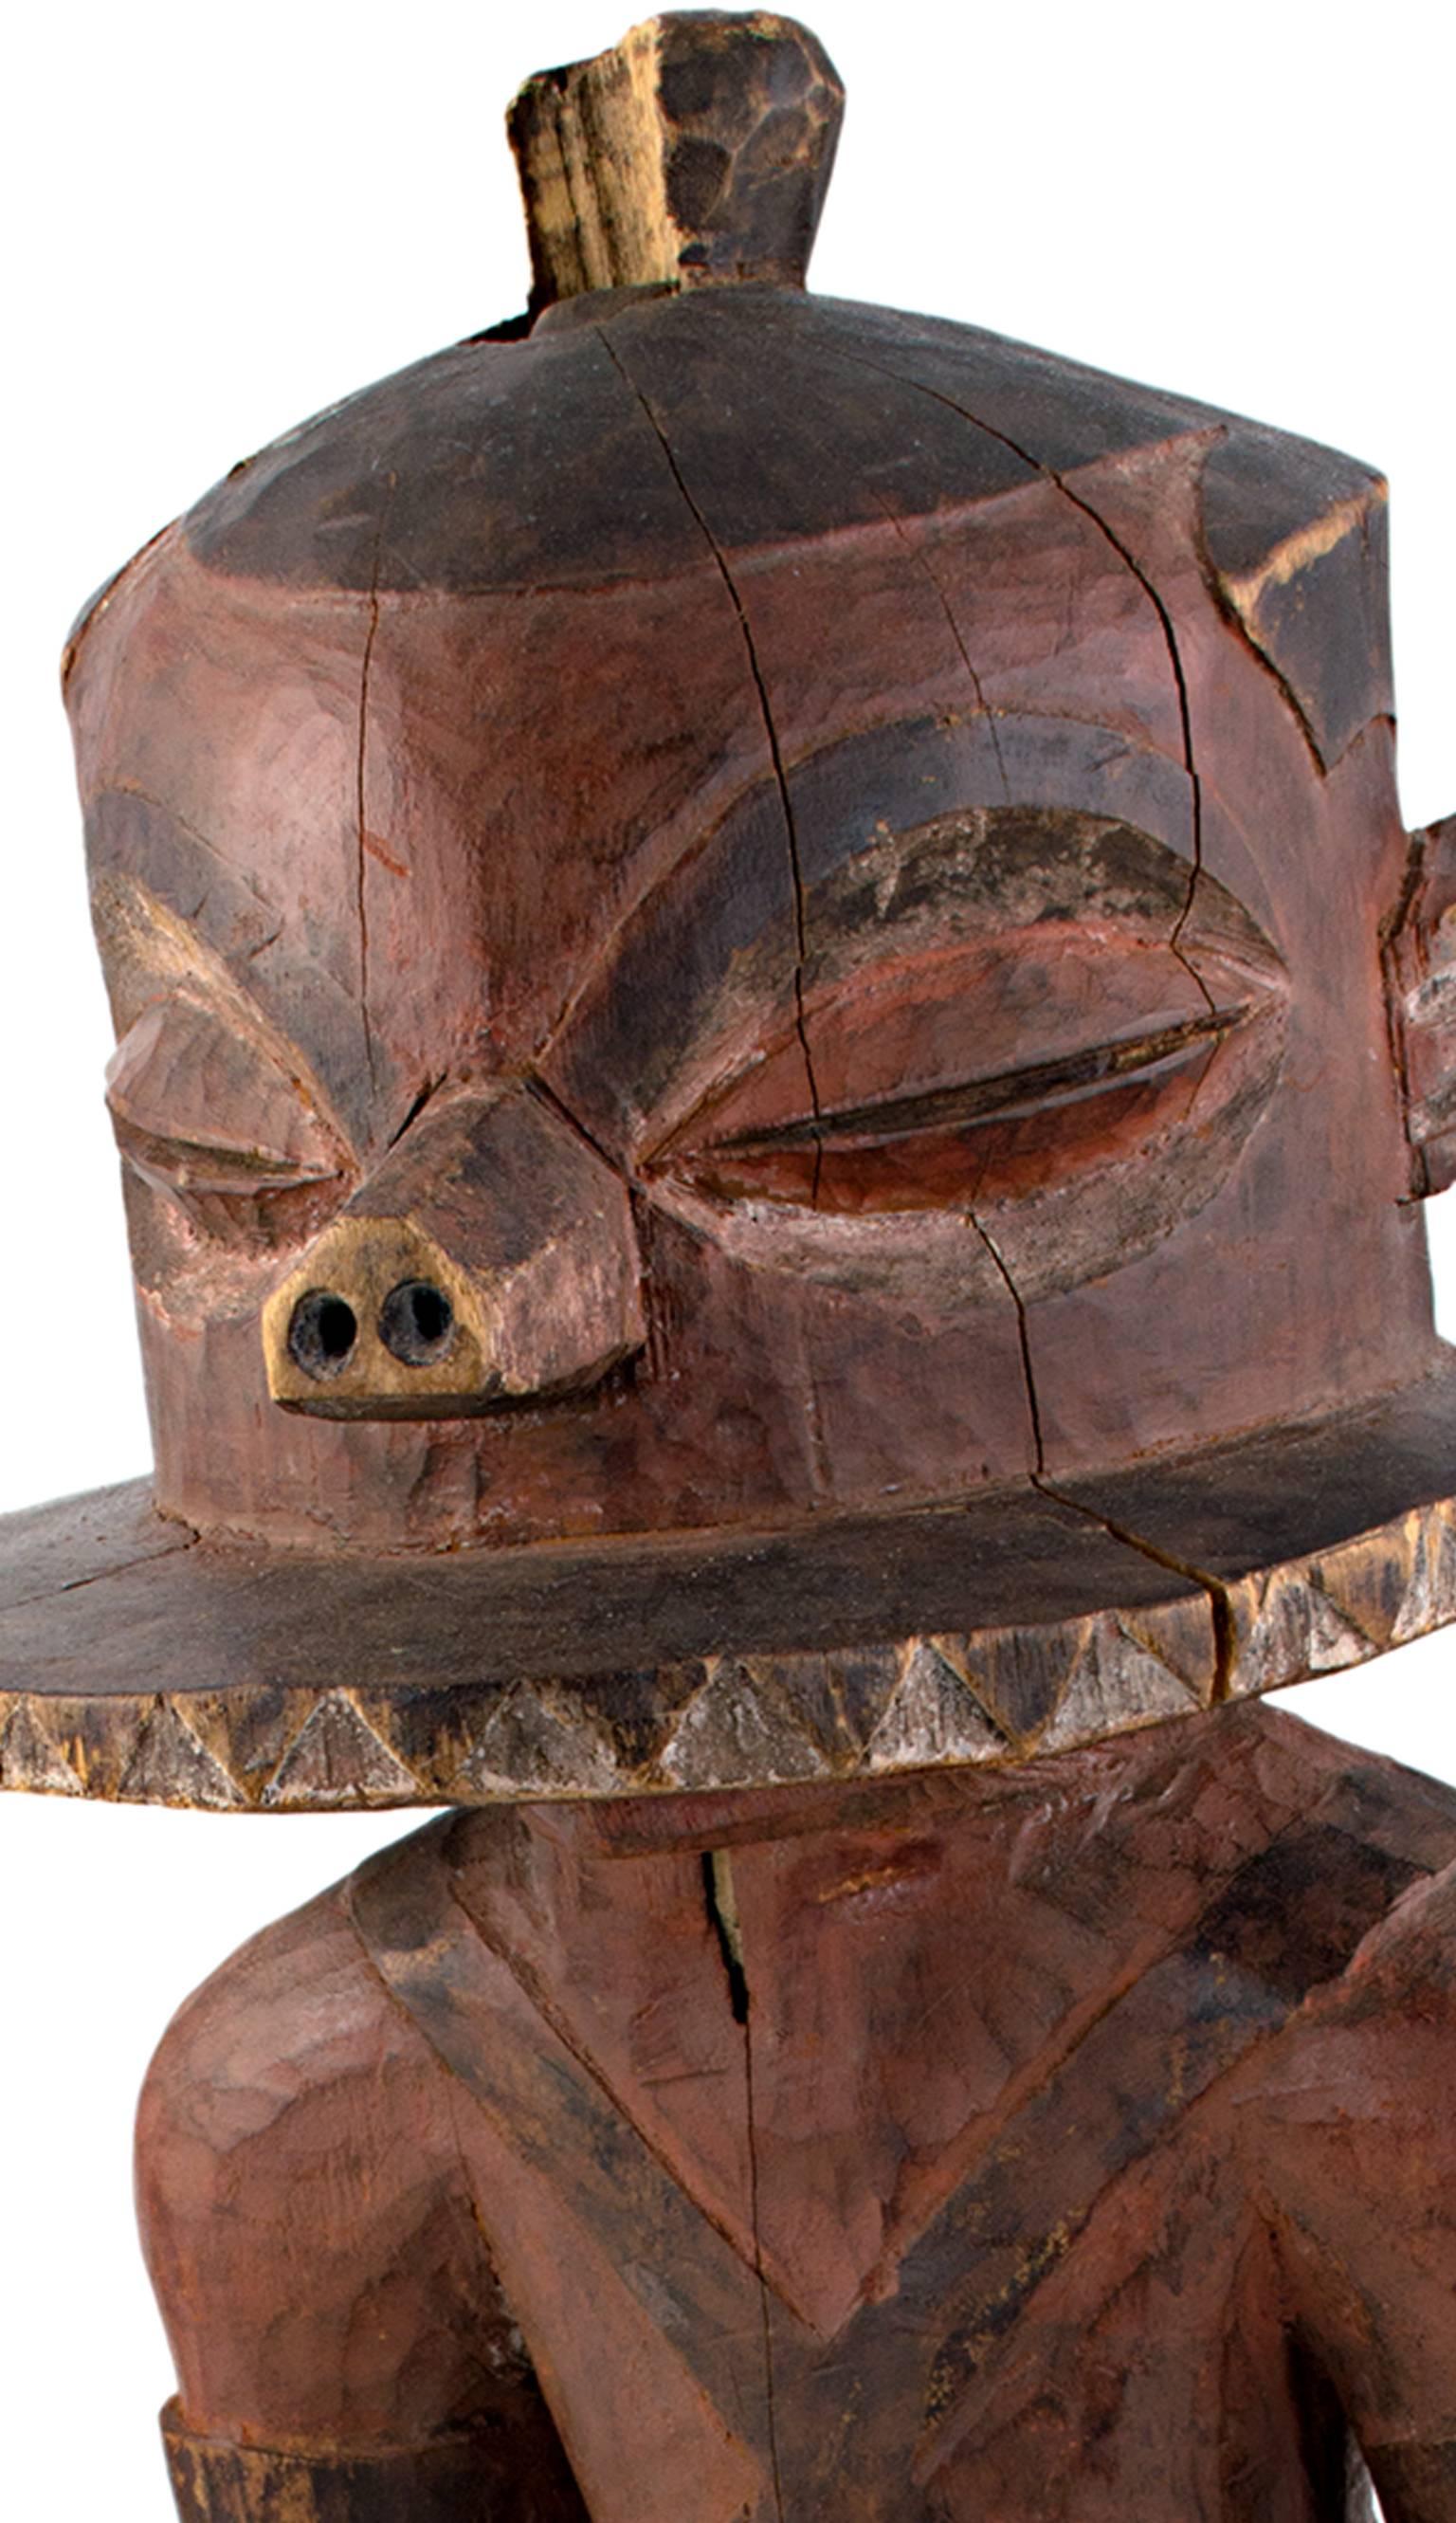 Diese Statue wurde von einem unbekannten Pende-Künstler aus Zaire geschnitzt. Es zeigt einen gehenden Mann mit einer Scheibe auf dem Kopf und großen Augen. 

25 3/4